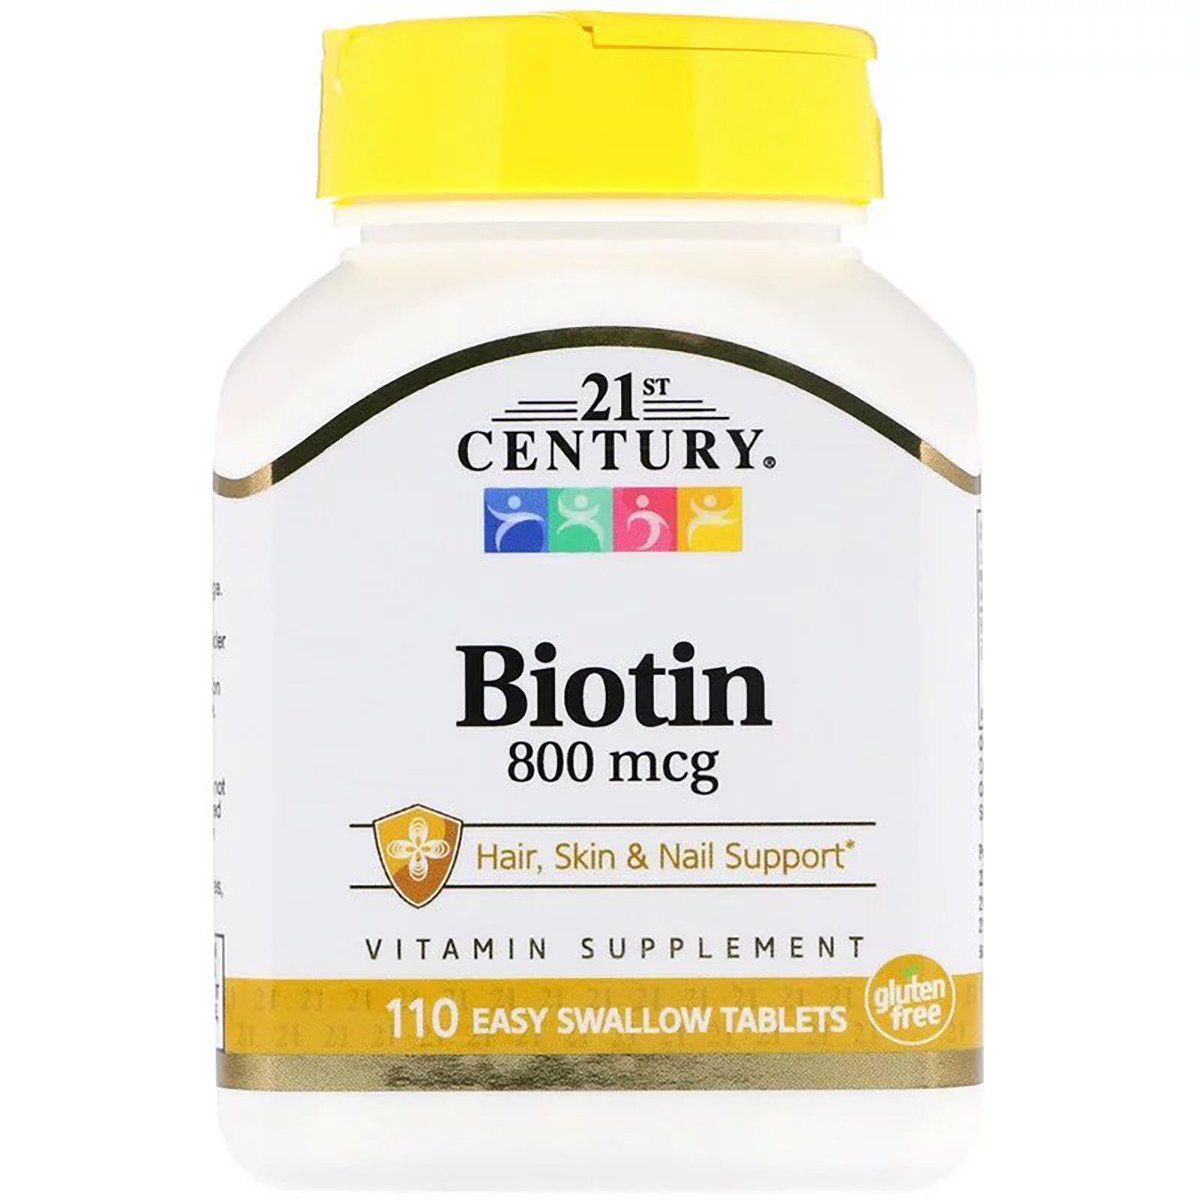 21st Century Биотин, 800 мкг, 21st Century, 110 таблеток, , 